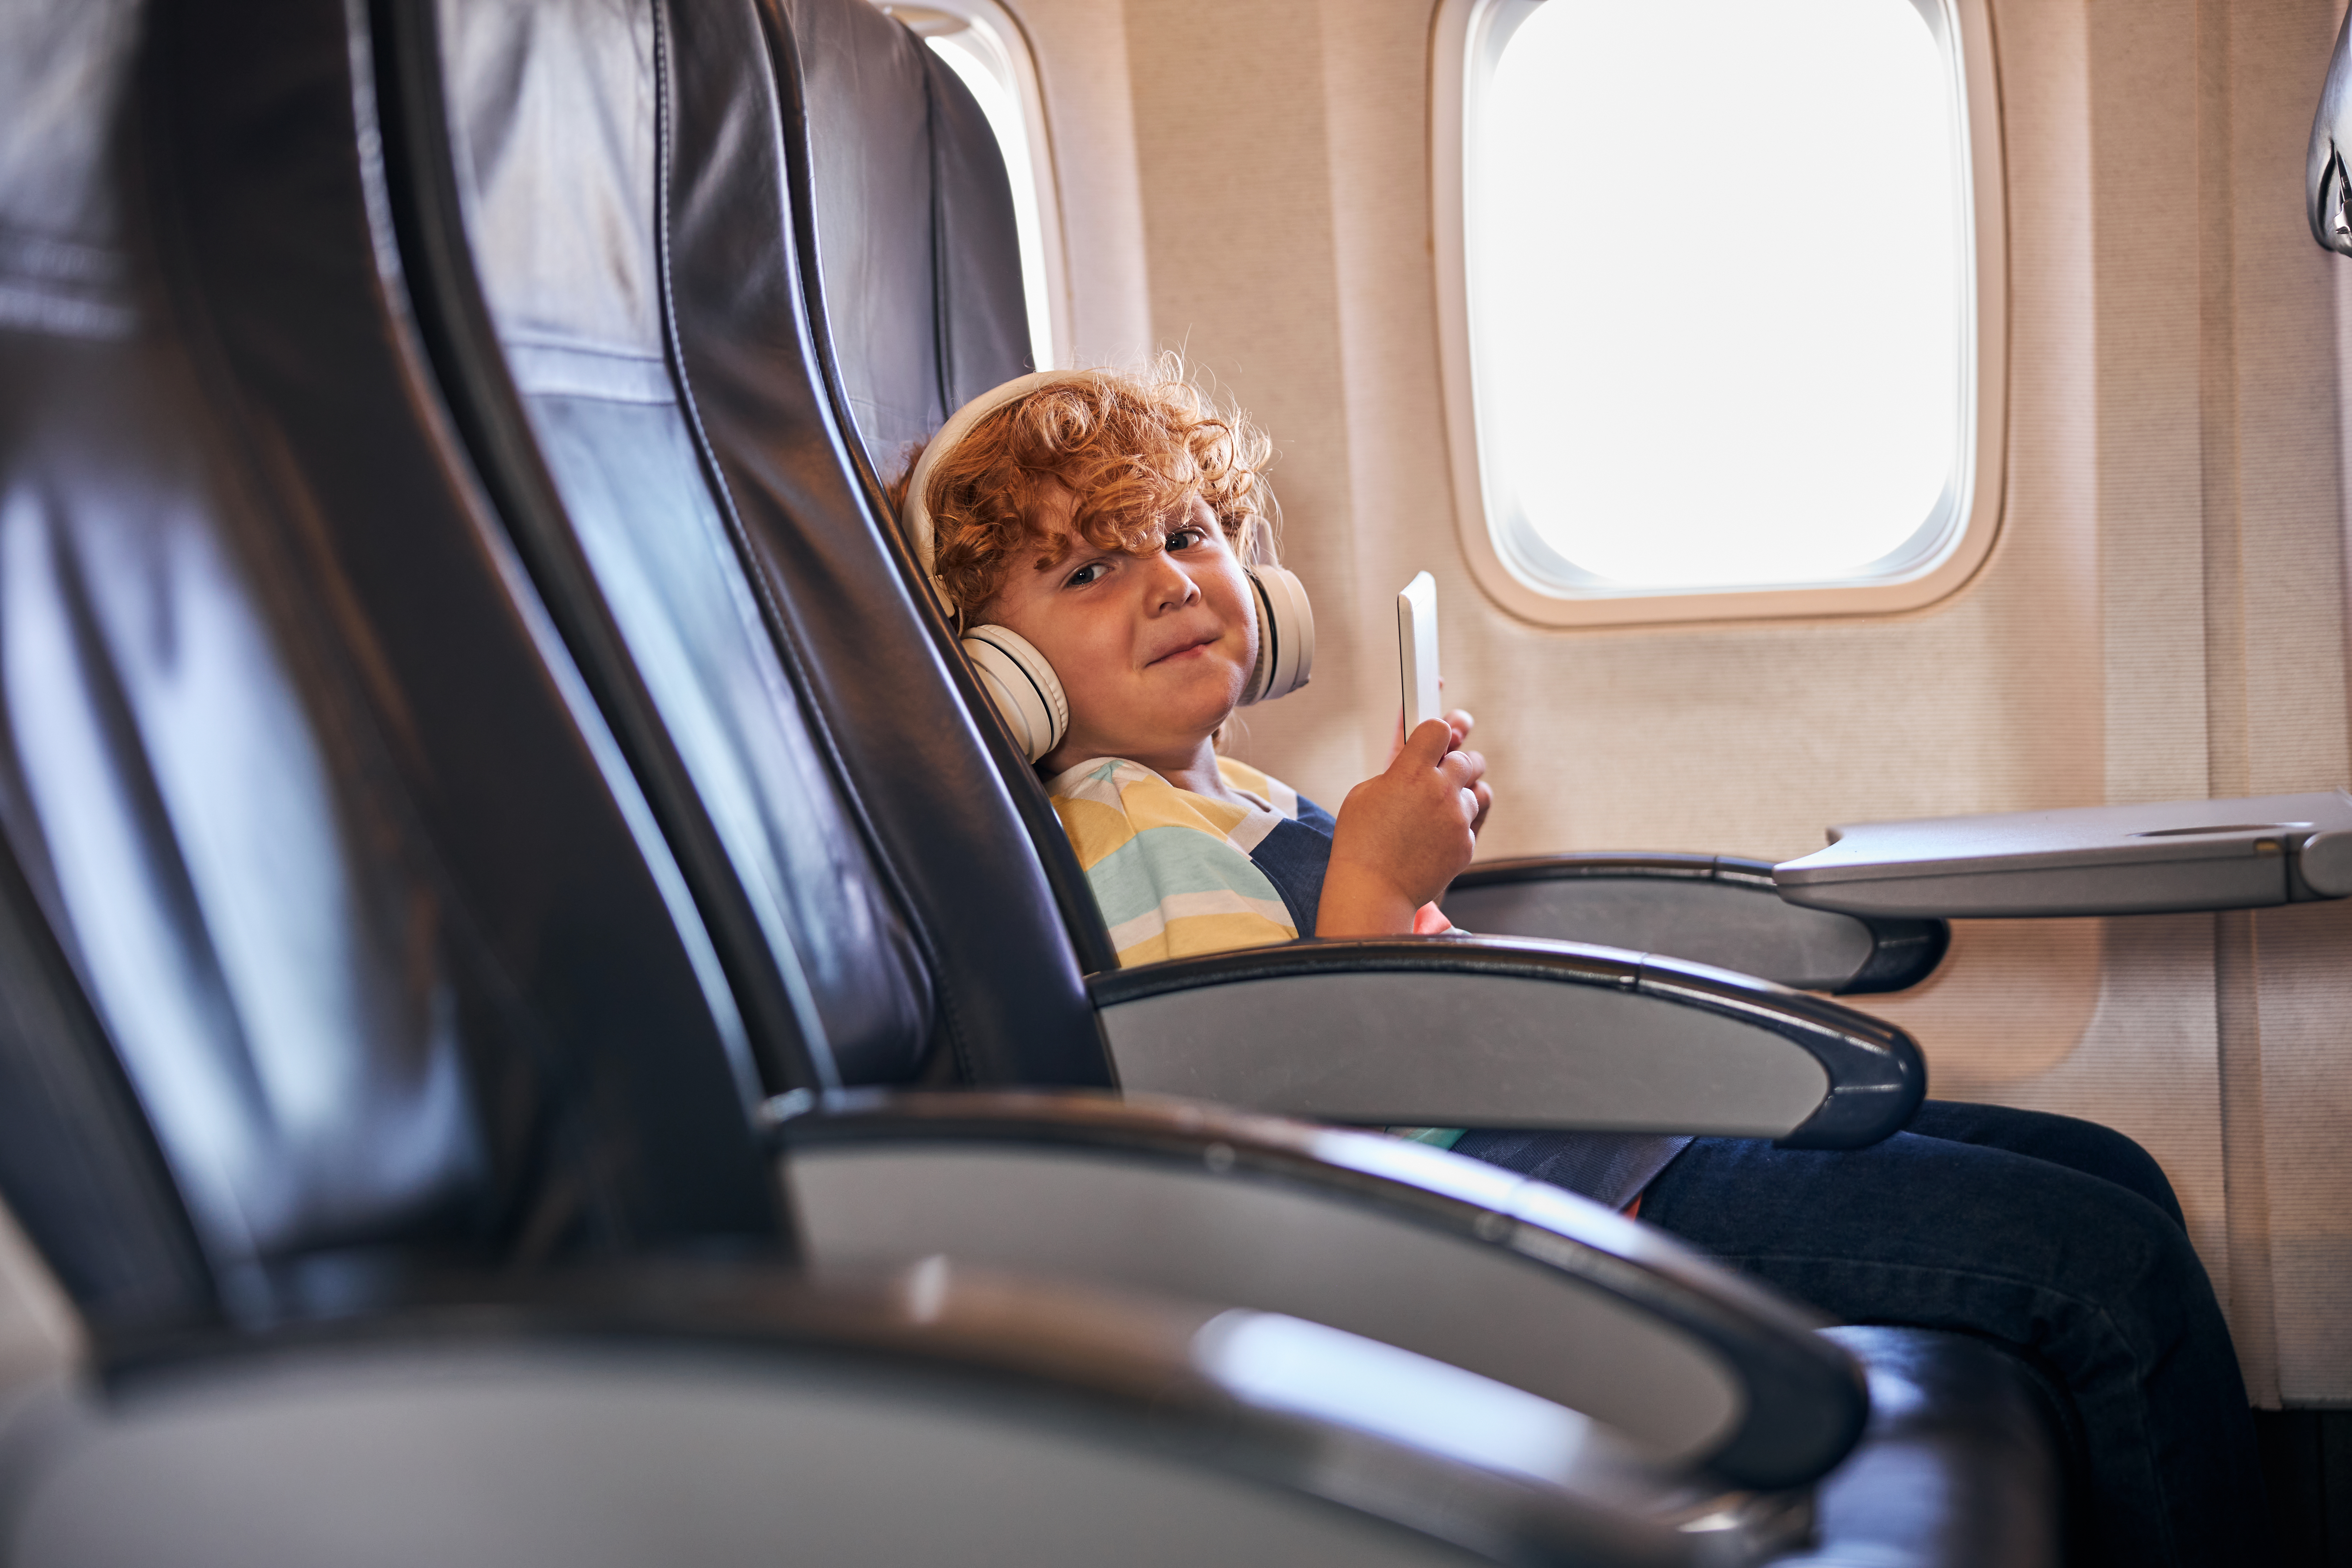 Ein schelmisches Kind in einem Flugzeug | Quelle: Shutterstock